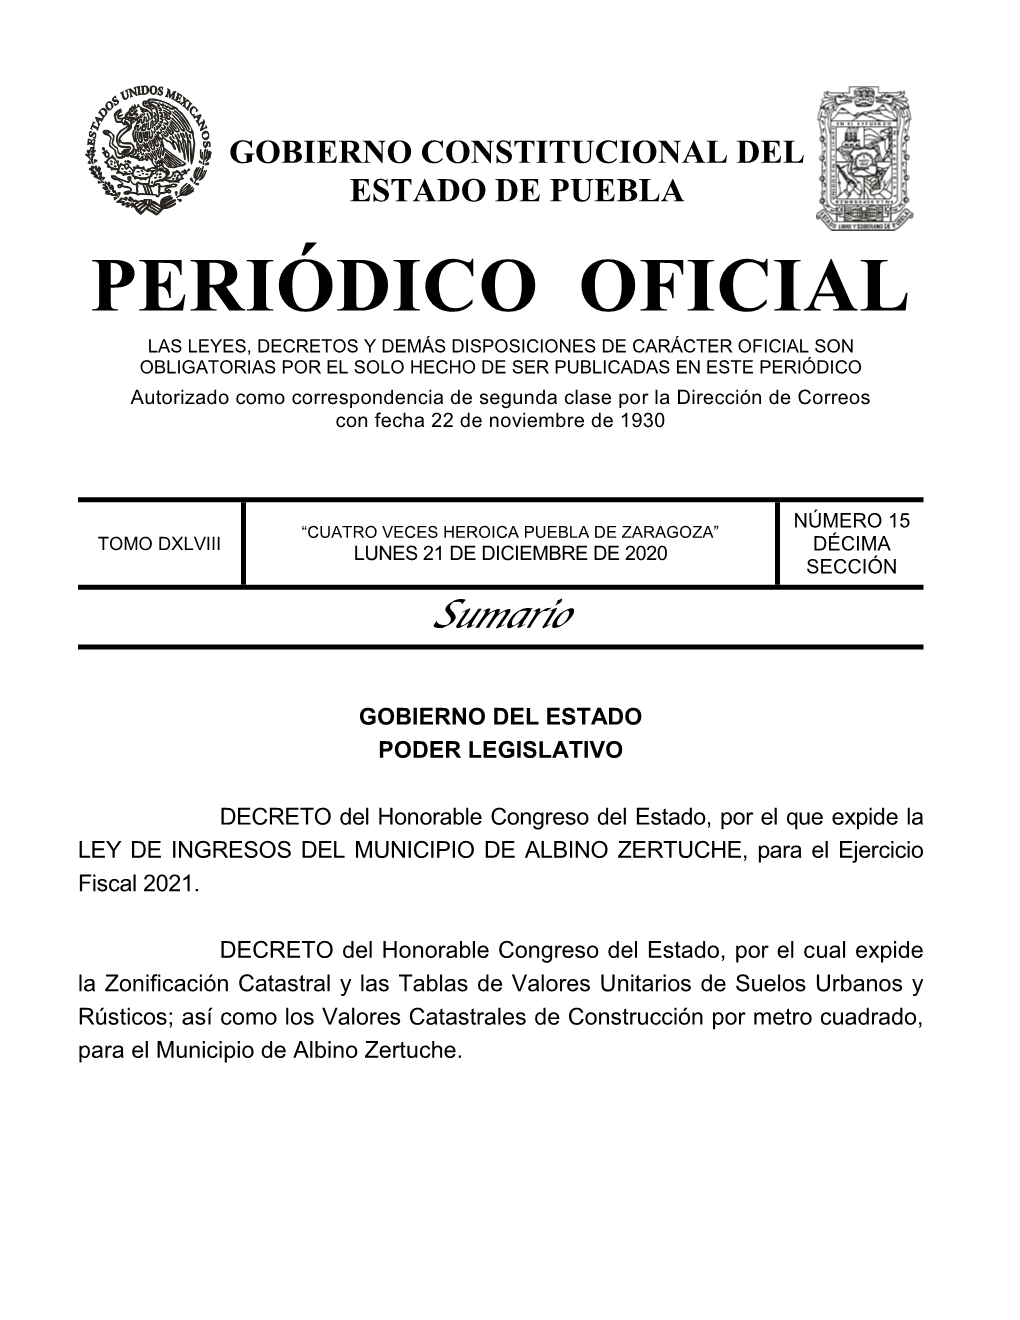 LEY DE INGRESOS DEL MUNICIPIO DE ALBINO ZERTUCHE, Para El Ejercicio Fiscal 2021